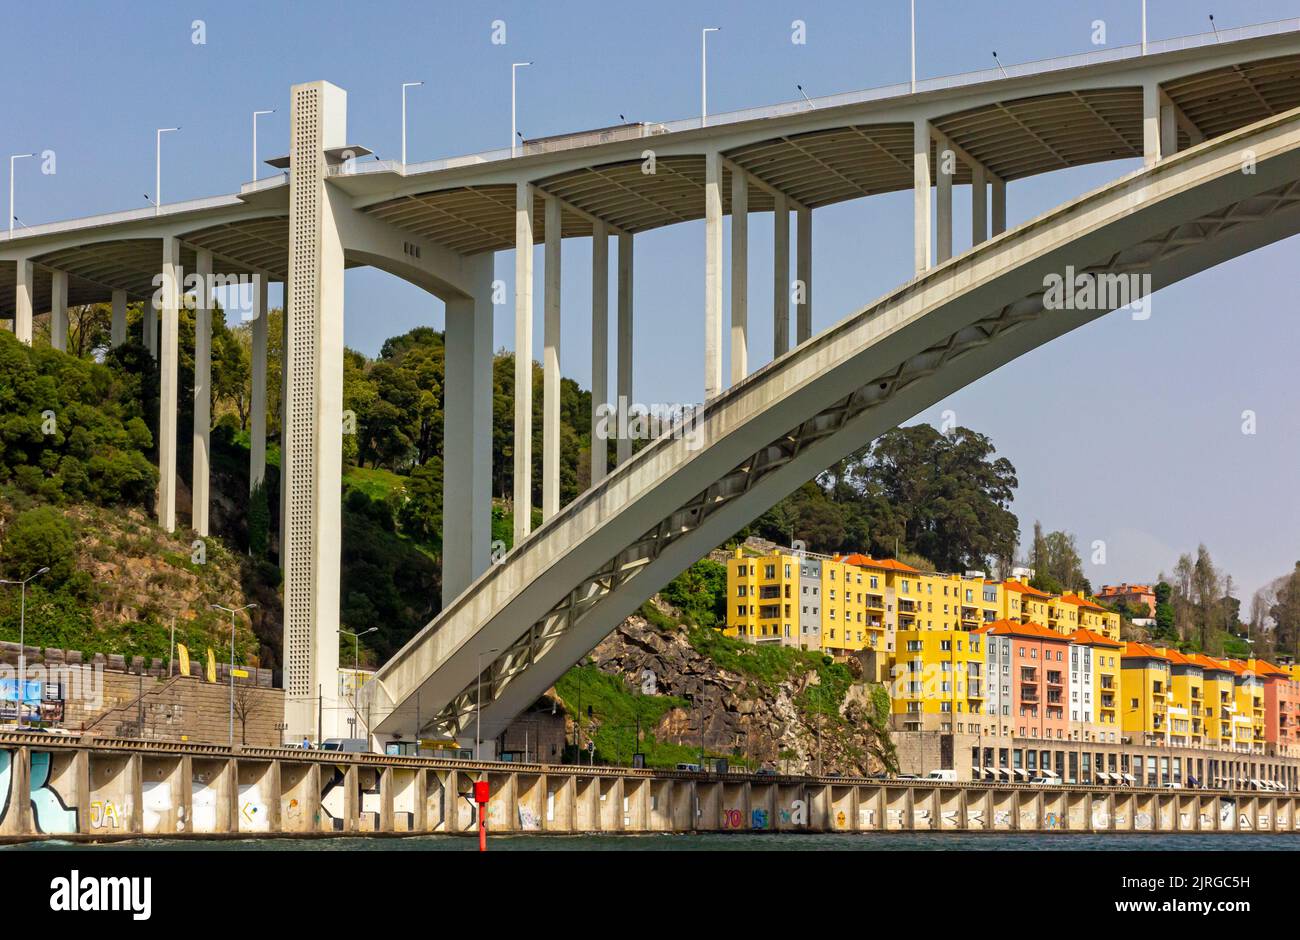 Ponte da Arrabida a concrete bridge over the River Douro in Porto Portugal opened in 1963 and designed by Edgar António Mesquita Cardoso. Stock Photo